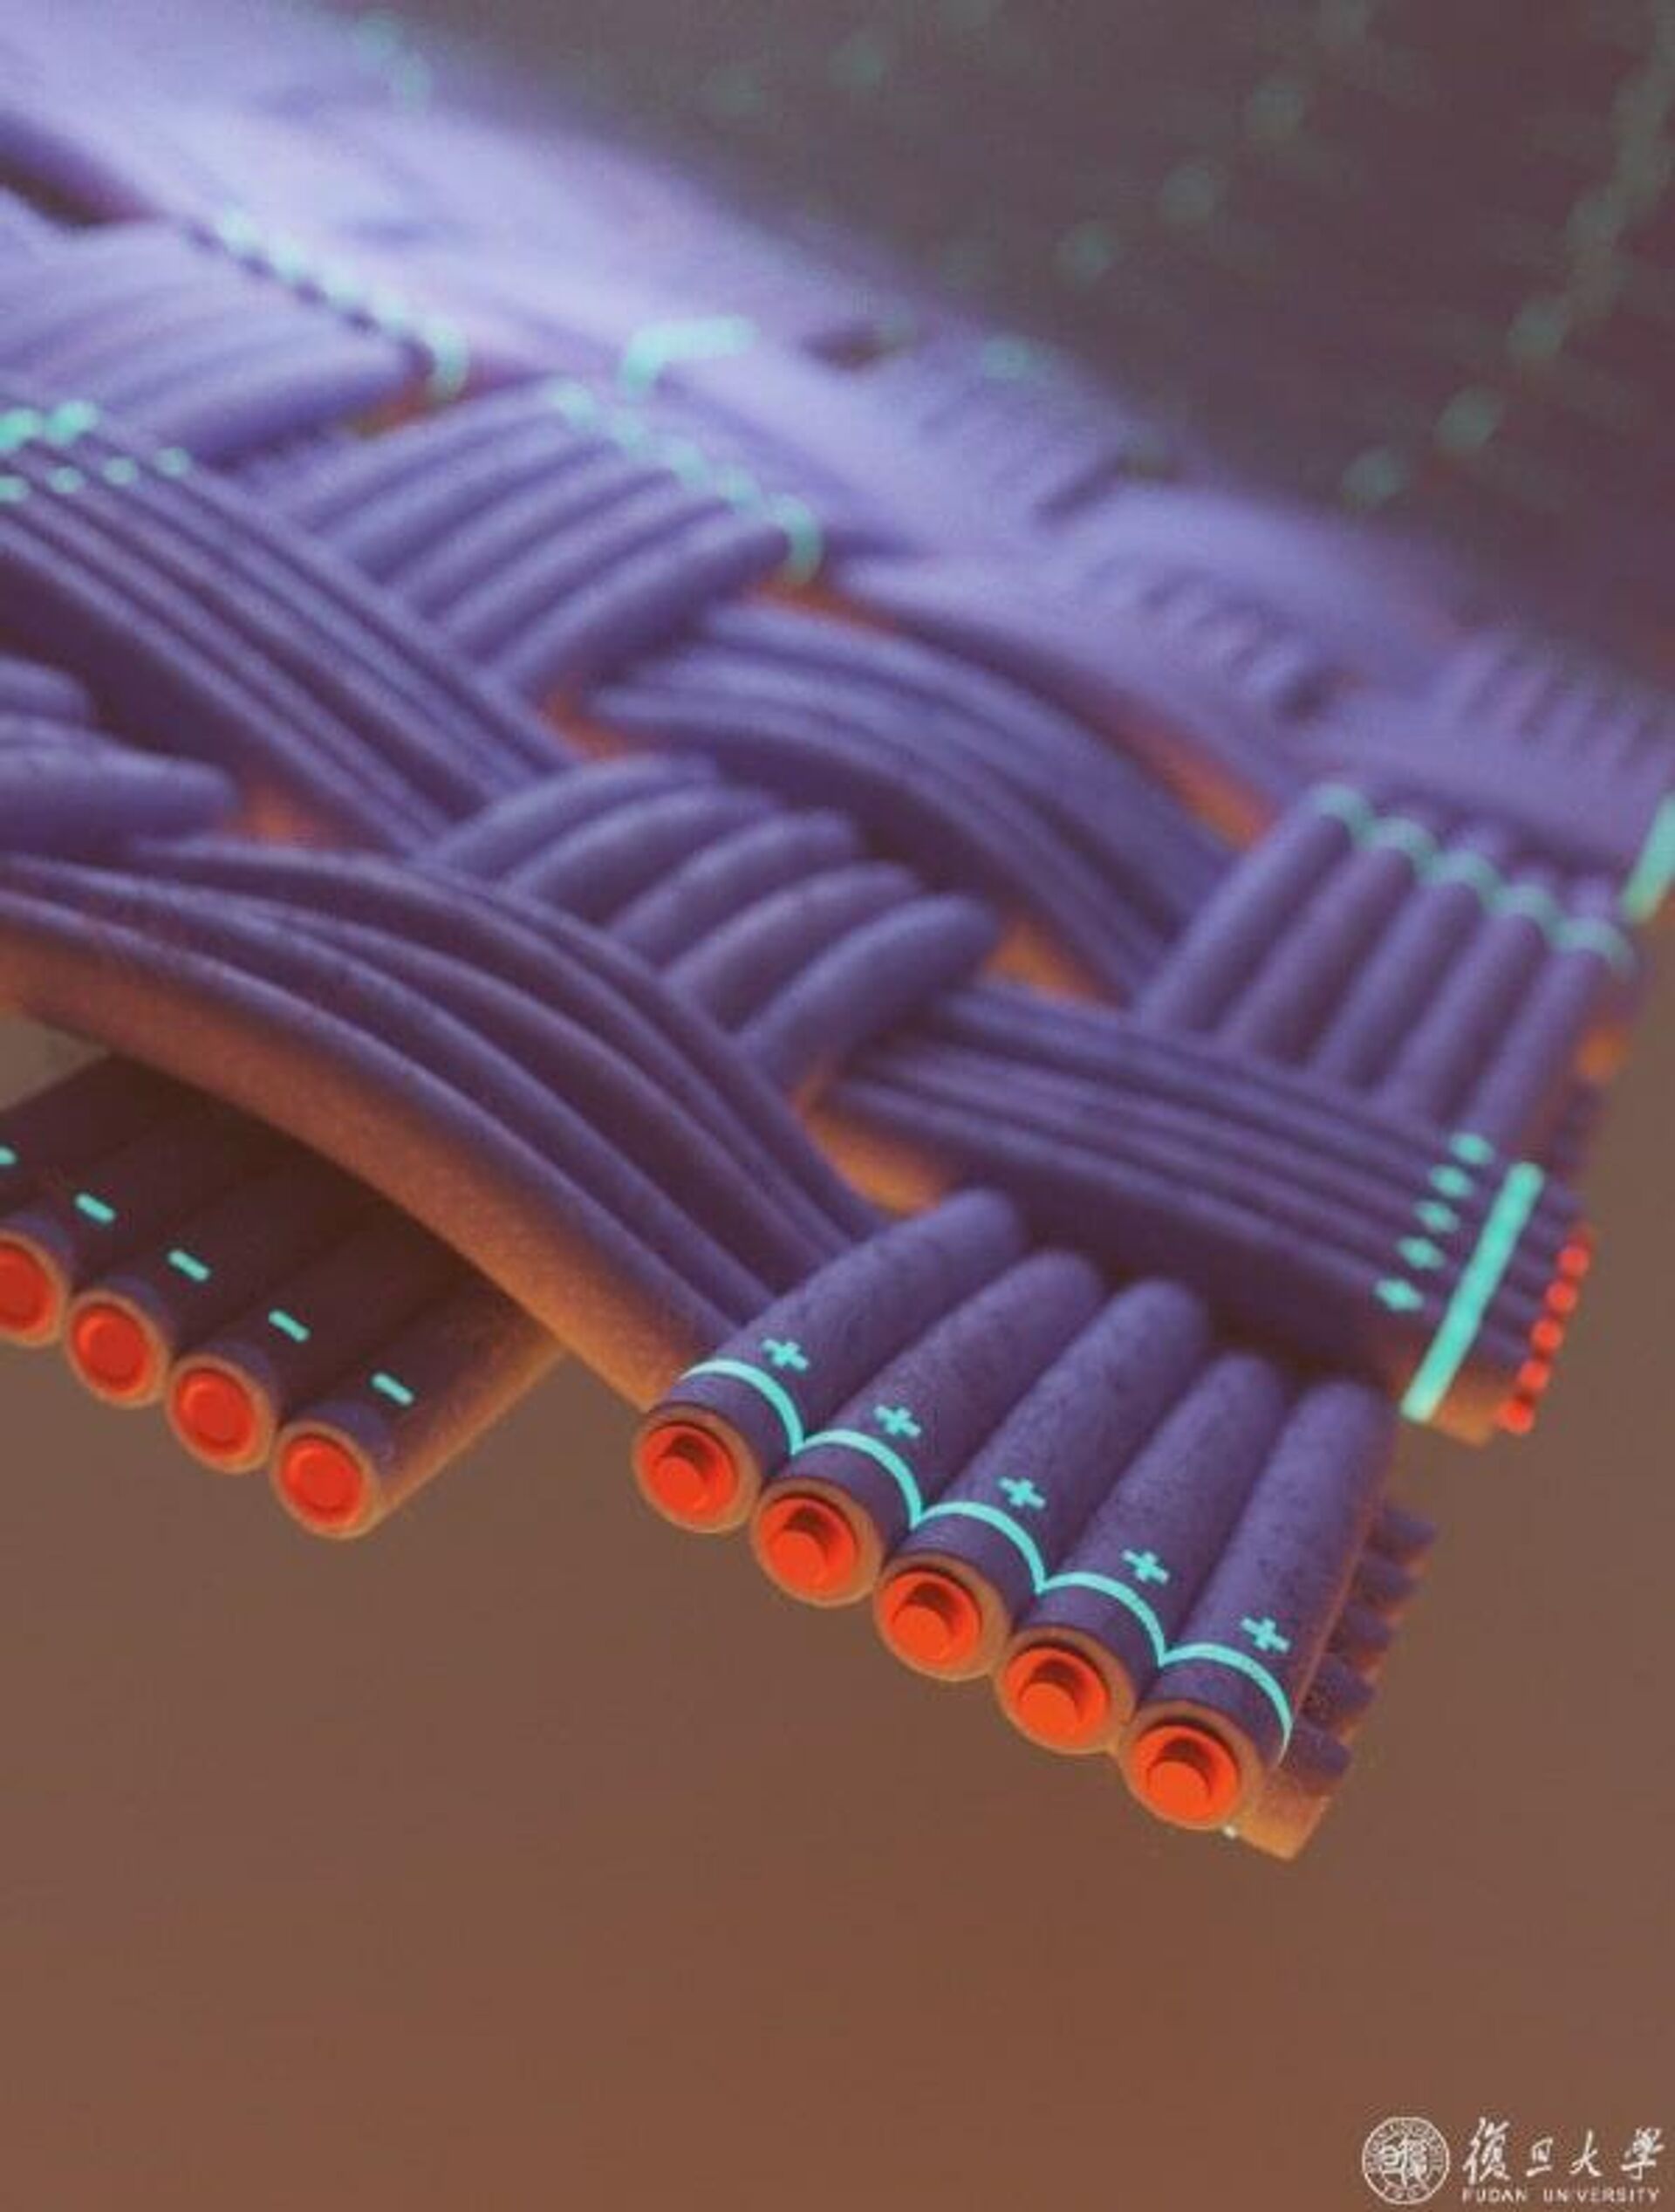 Новый волокнообразный литий-ионный аккумулятор, разработанный в шанхайском университете Фудань - РИА Новости, 1920, 13.04.2022